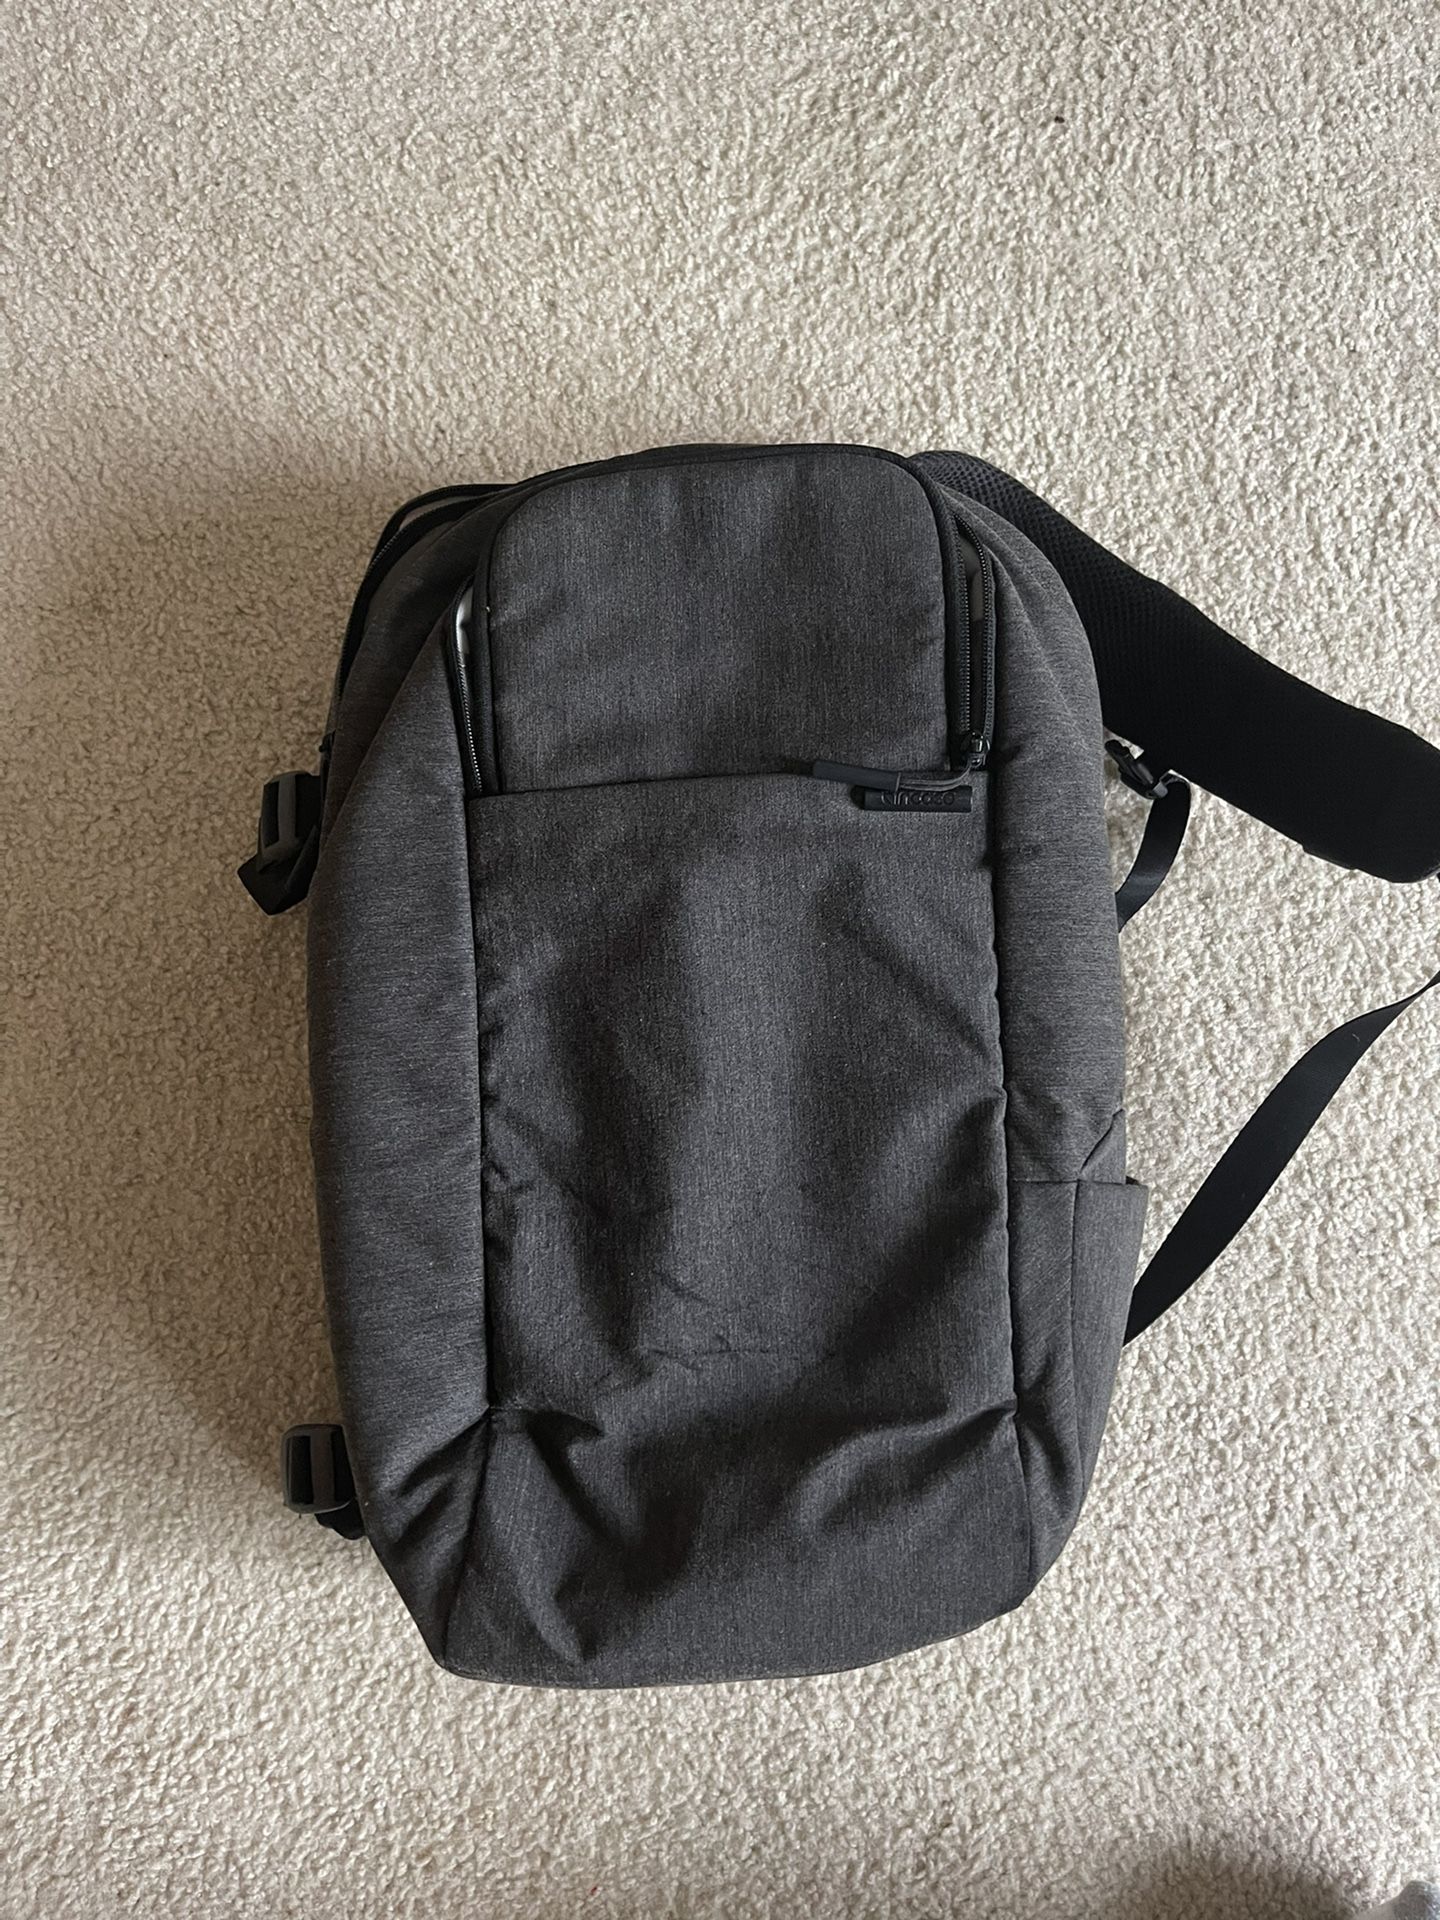 Incase DSLR Backpack